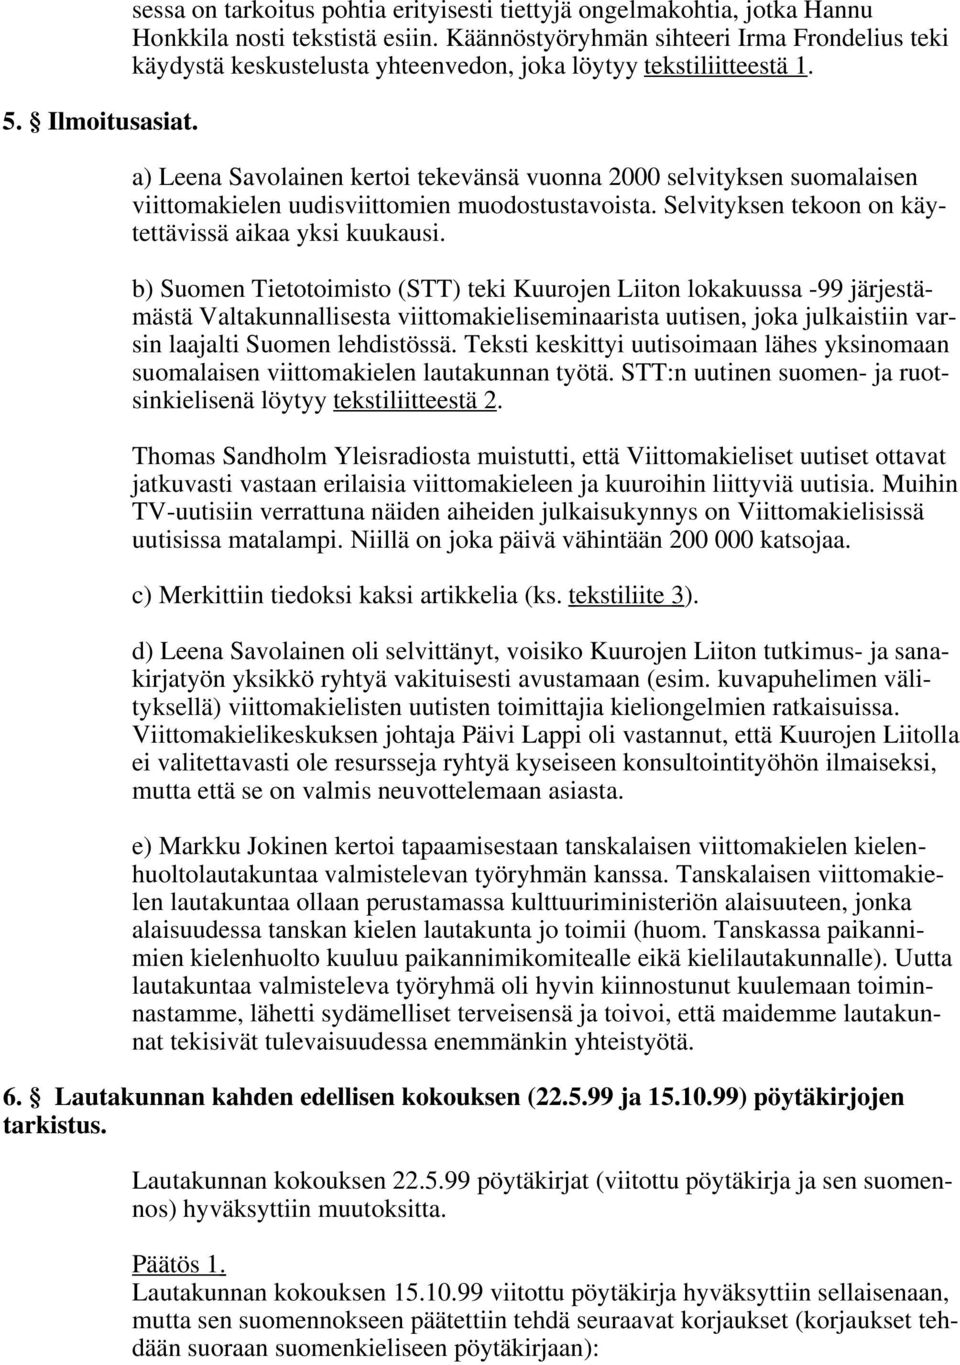 a) Leena Savolainen kertoi tekevänsä vuonna 2000 selvityksen suomalaisen viittomakielen uudisviittomien muodostustavoista. Selvityksen tekoon on käytettävissä aikaa yksi kuukausi.